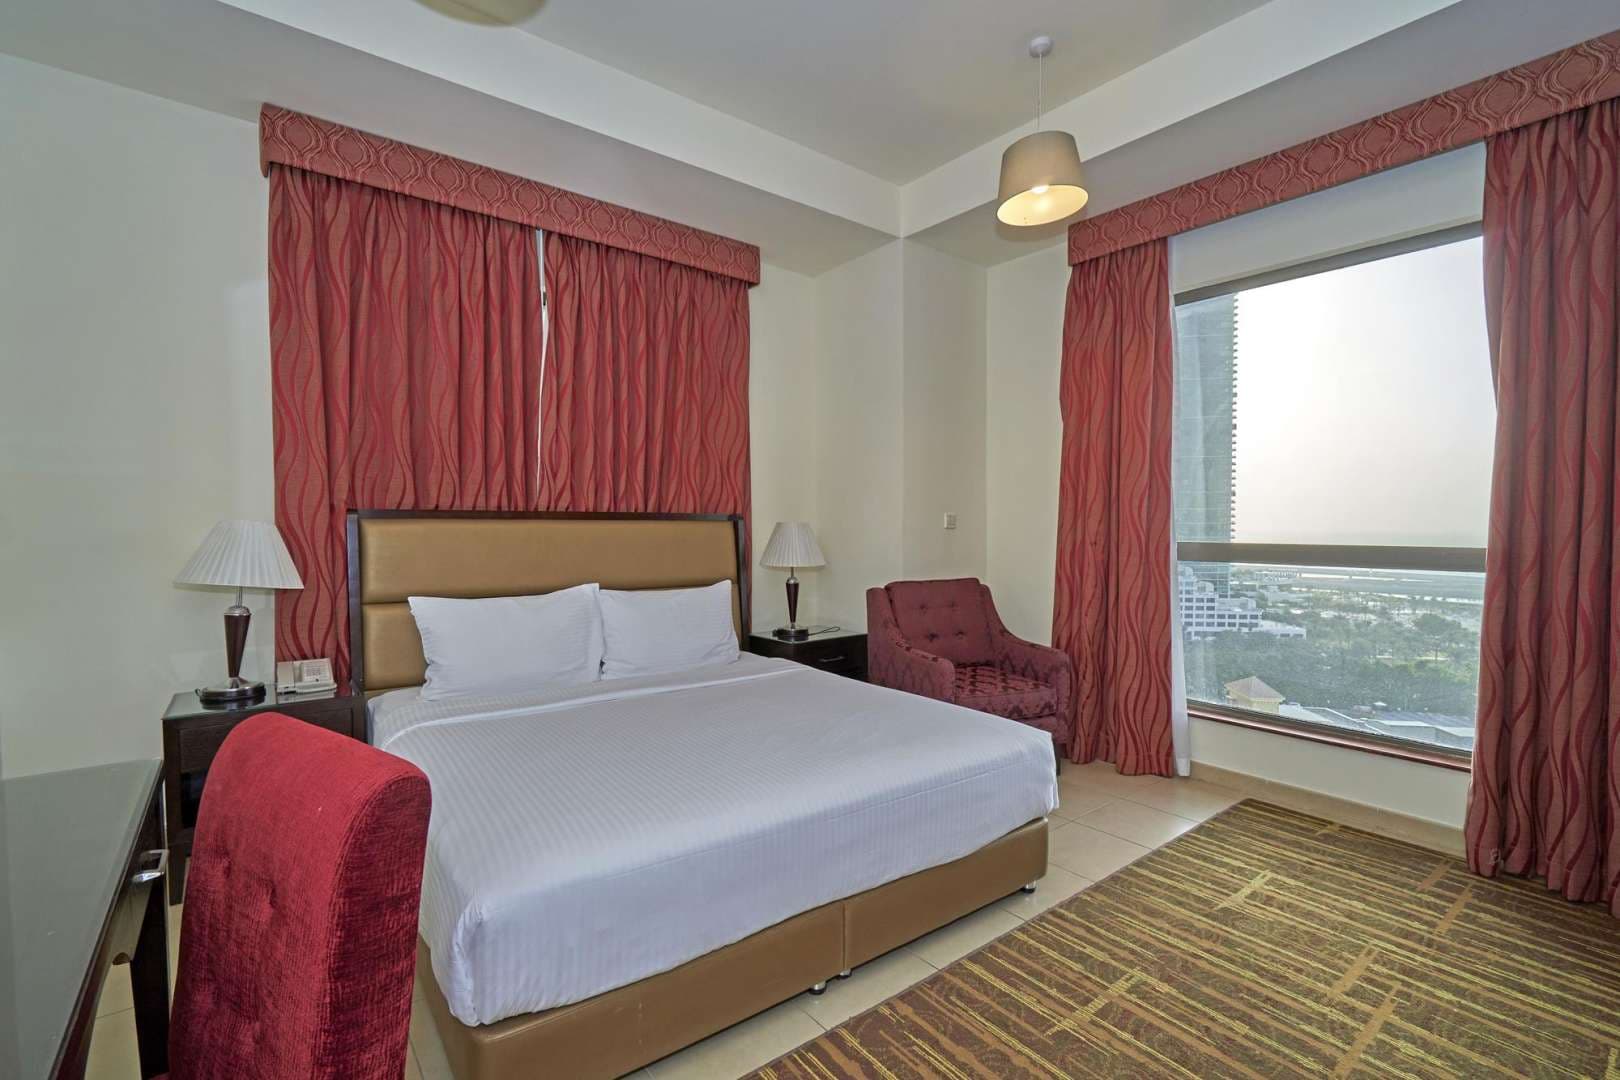 3 Bedroom Apartment For Rent Amwaj Lp05804 22d8580432fe0a00.jpg